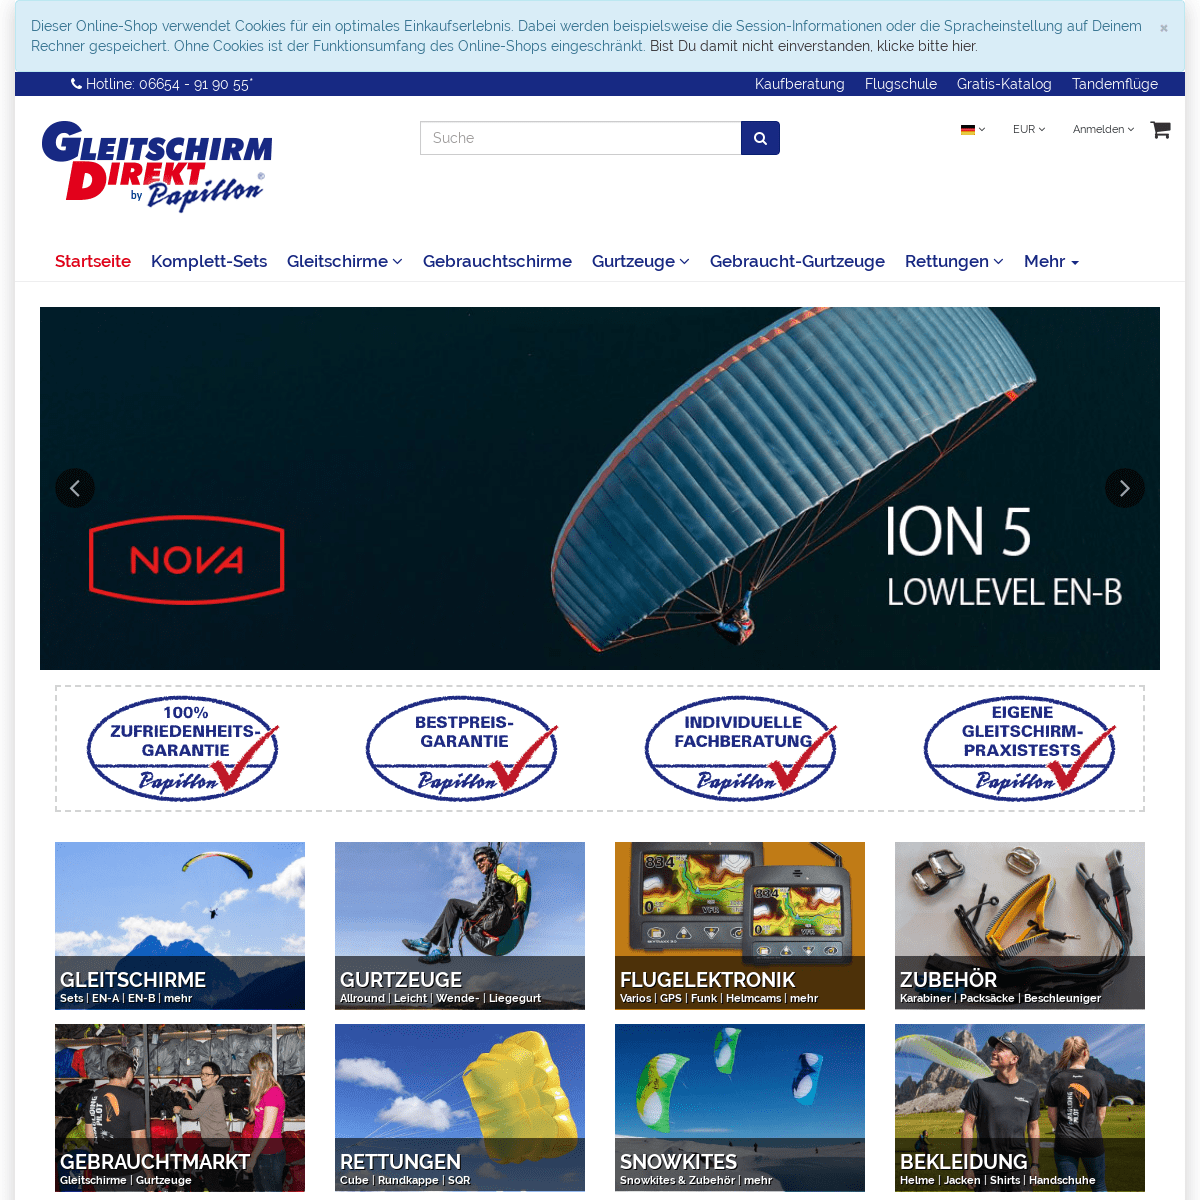 Gleitschirm Direkt Shop | Paragliding Shop Gleitschirm Direkt